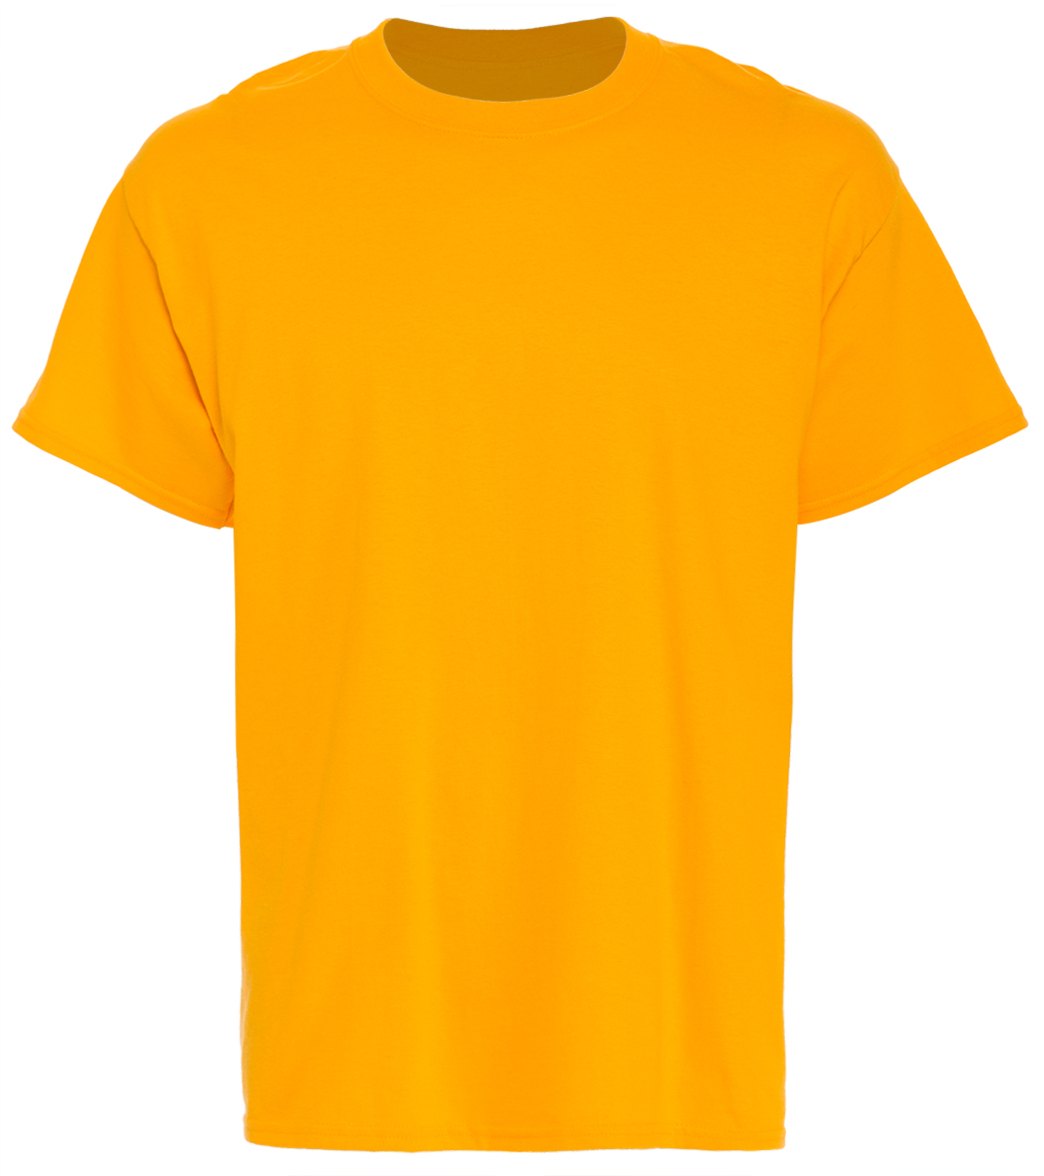 SwimOutlet Unisex Cotton T-Shirt - Brights